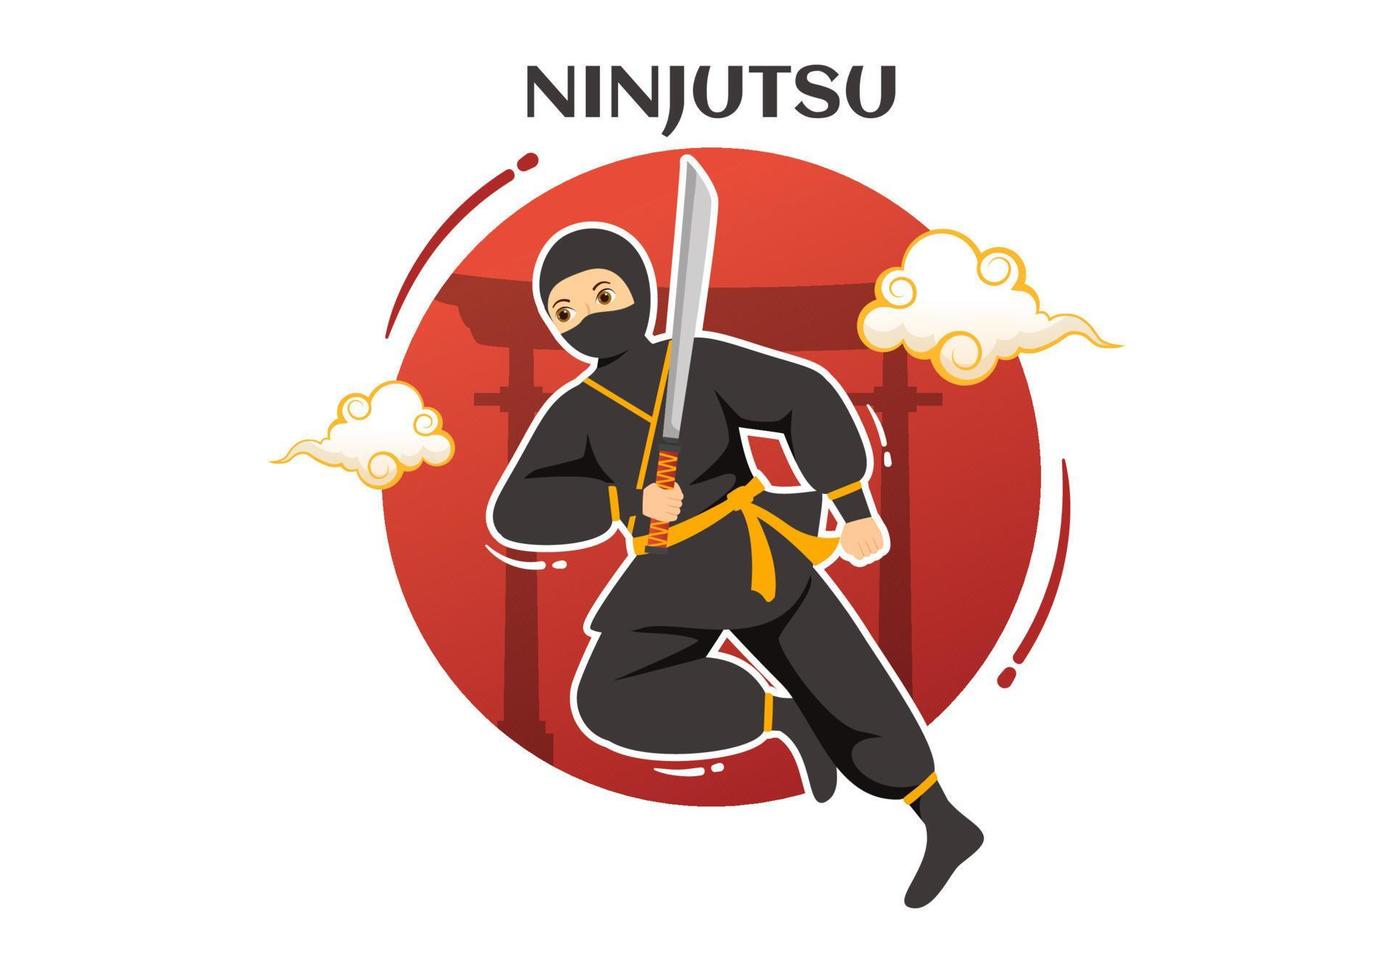 Asiático Ninja Desenho Animado Personagem Ilustração imagem vetorial de  brgfx© 662540662